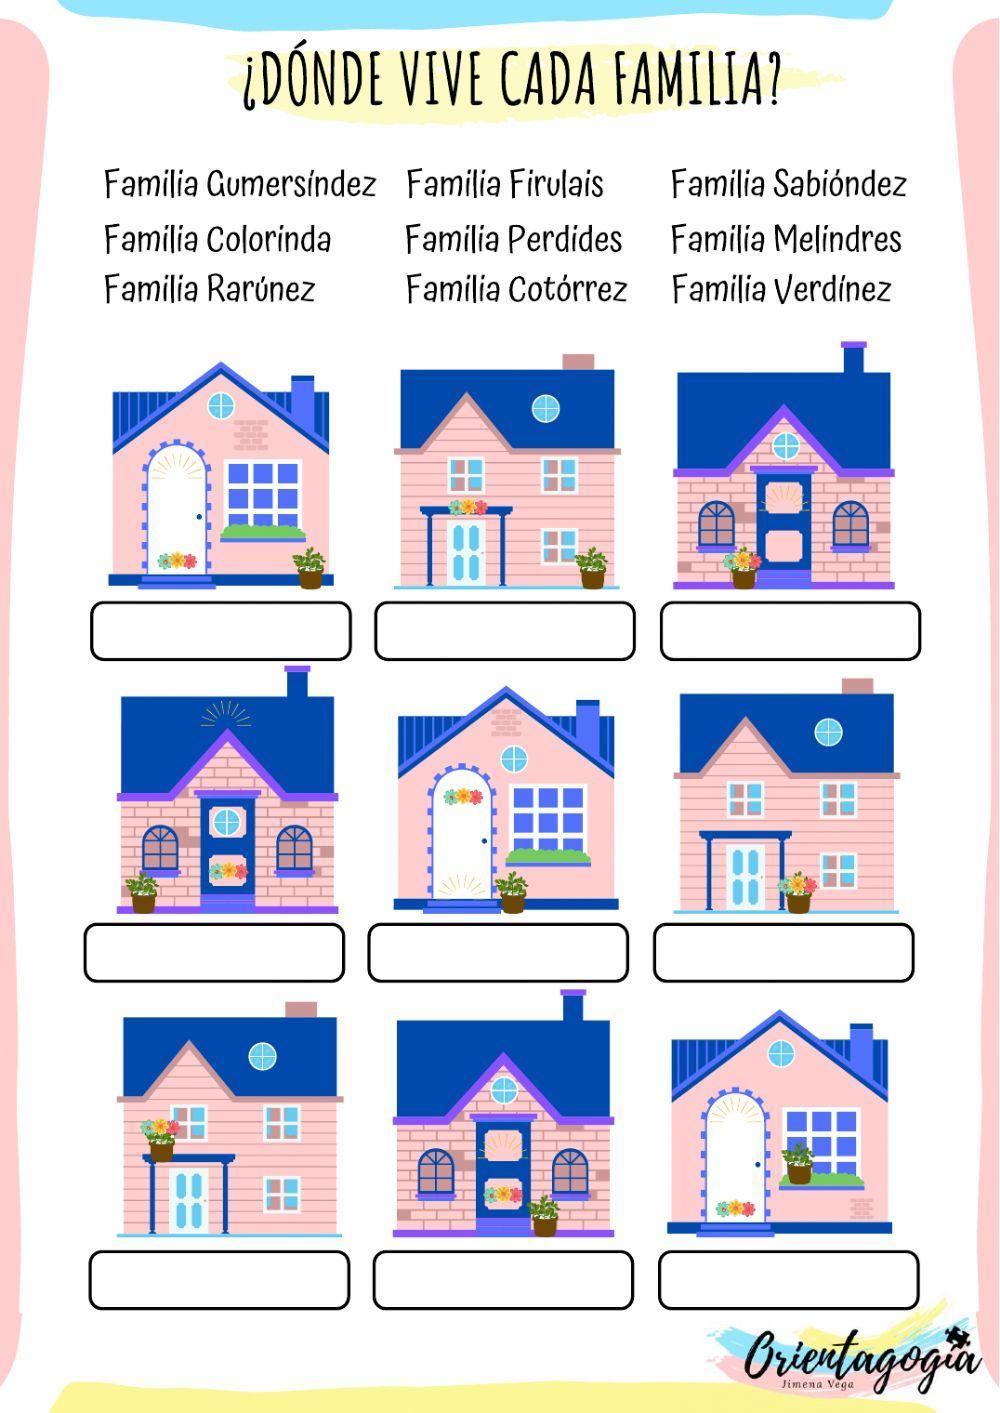 ¿Dónde vive cada familia?